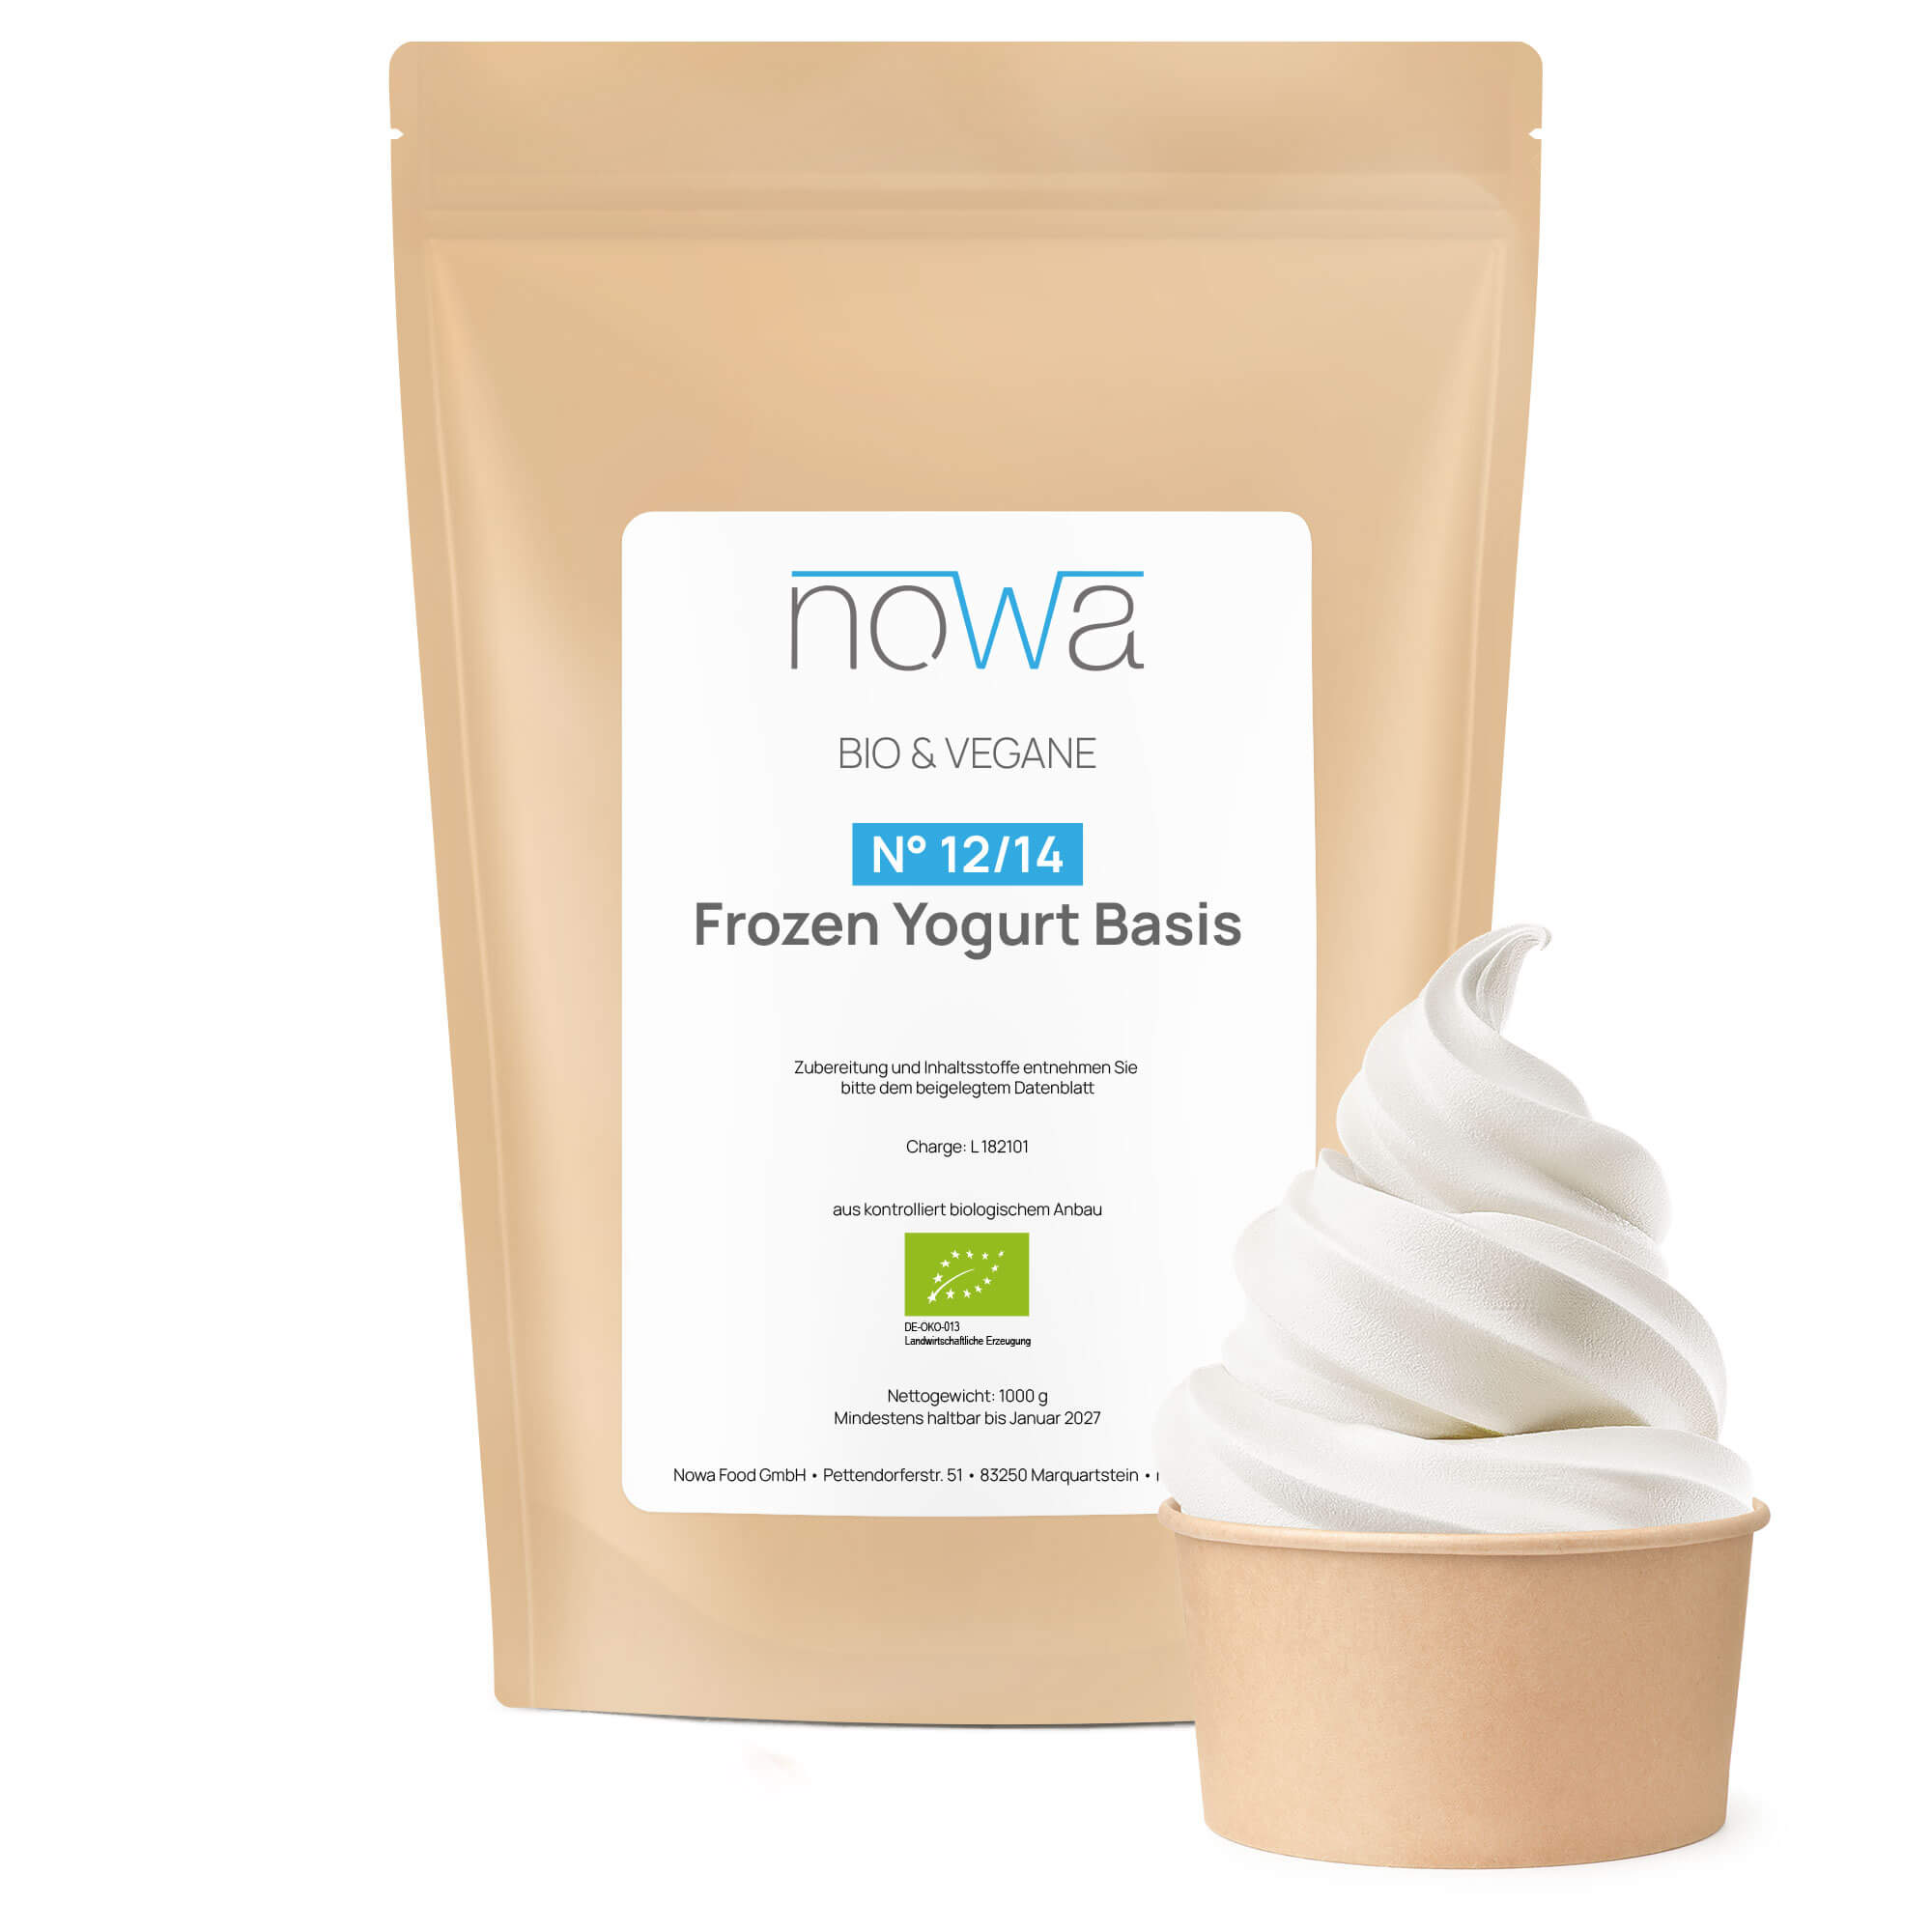 Nowa Frozen Yogurt Pulver N° 12/14 Basis